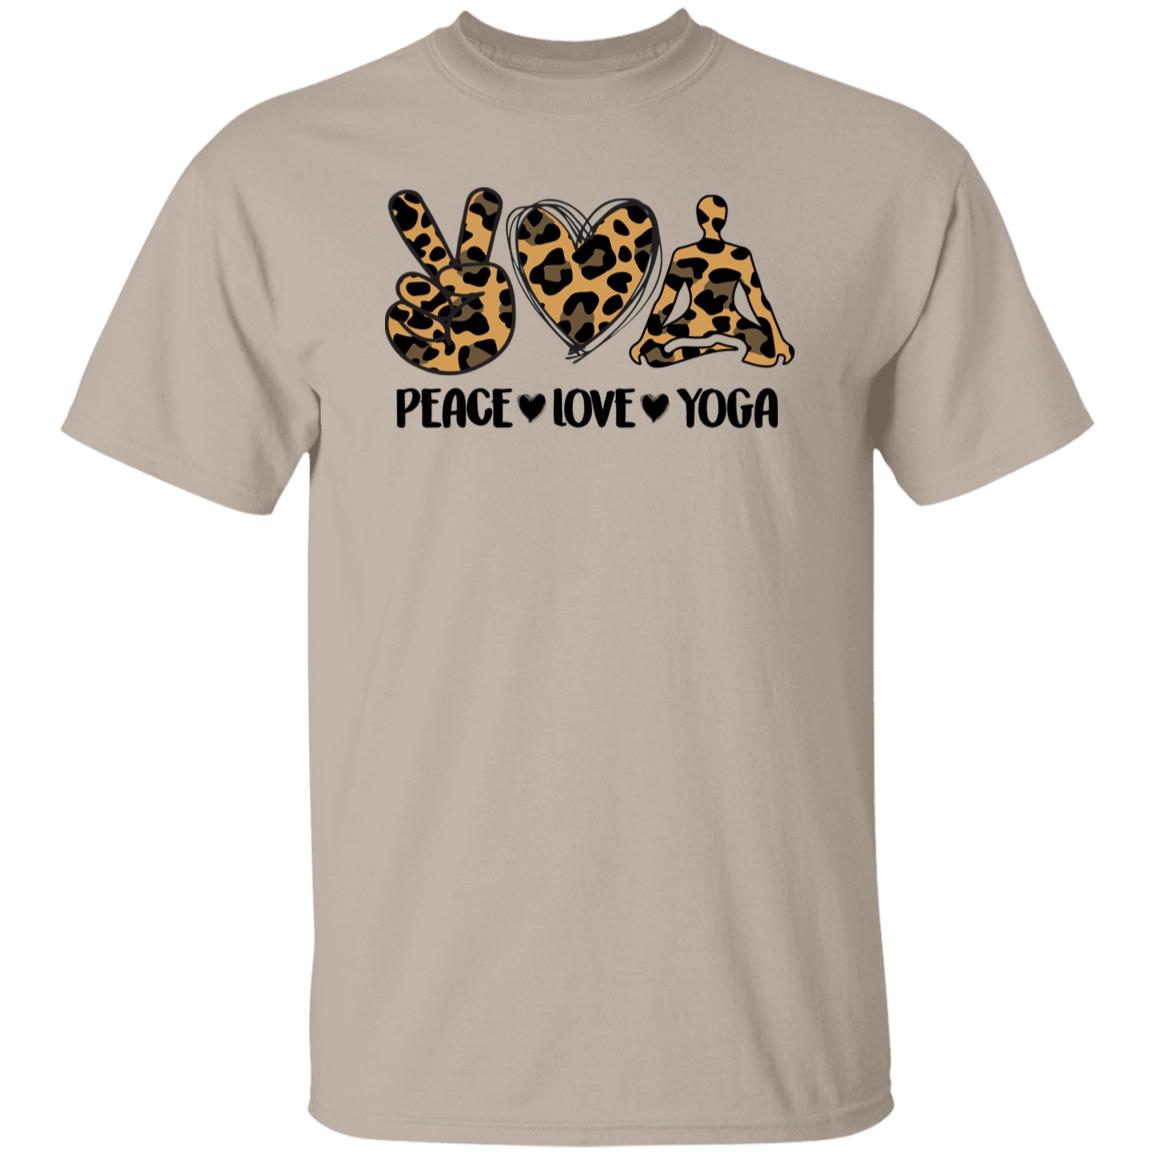 Peace Love Yoga T-Shirt Leopard skin Meditation Yoga Teacher Unisex Tee Sand White Sport Grey-Family-Gift-Planet